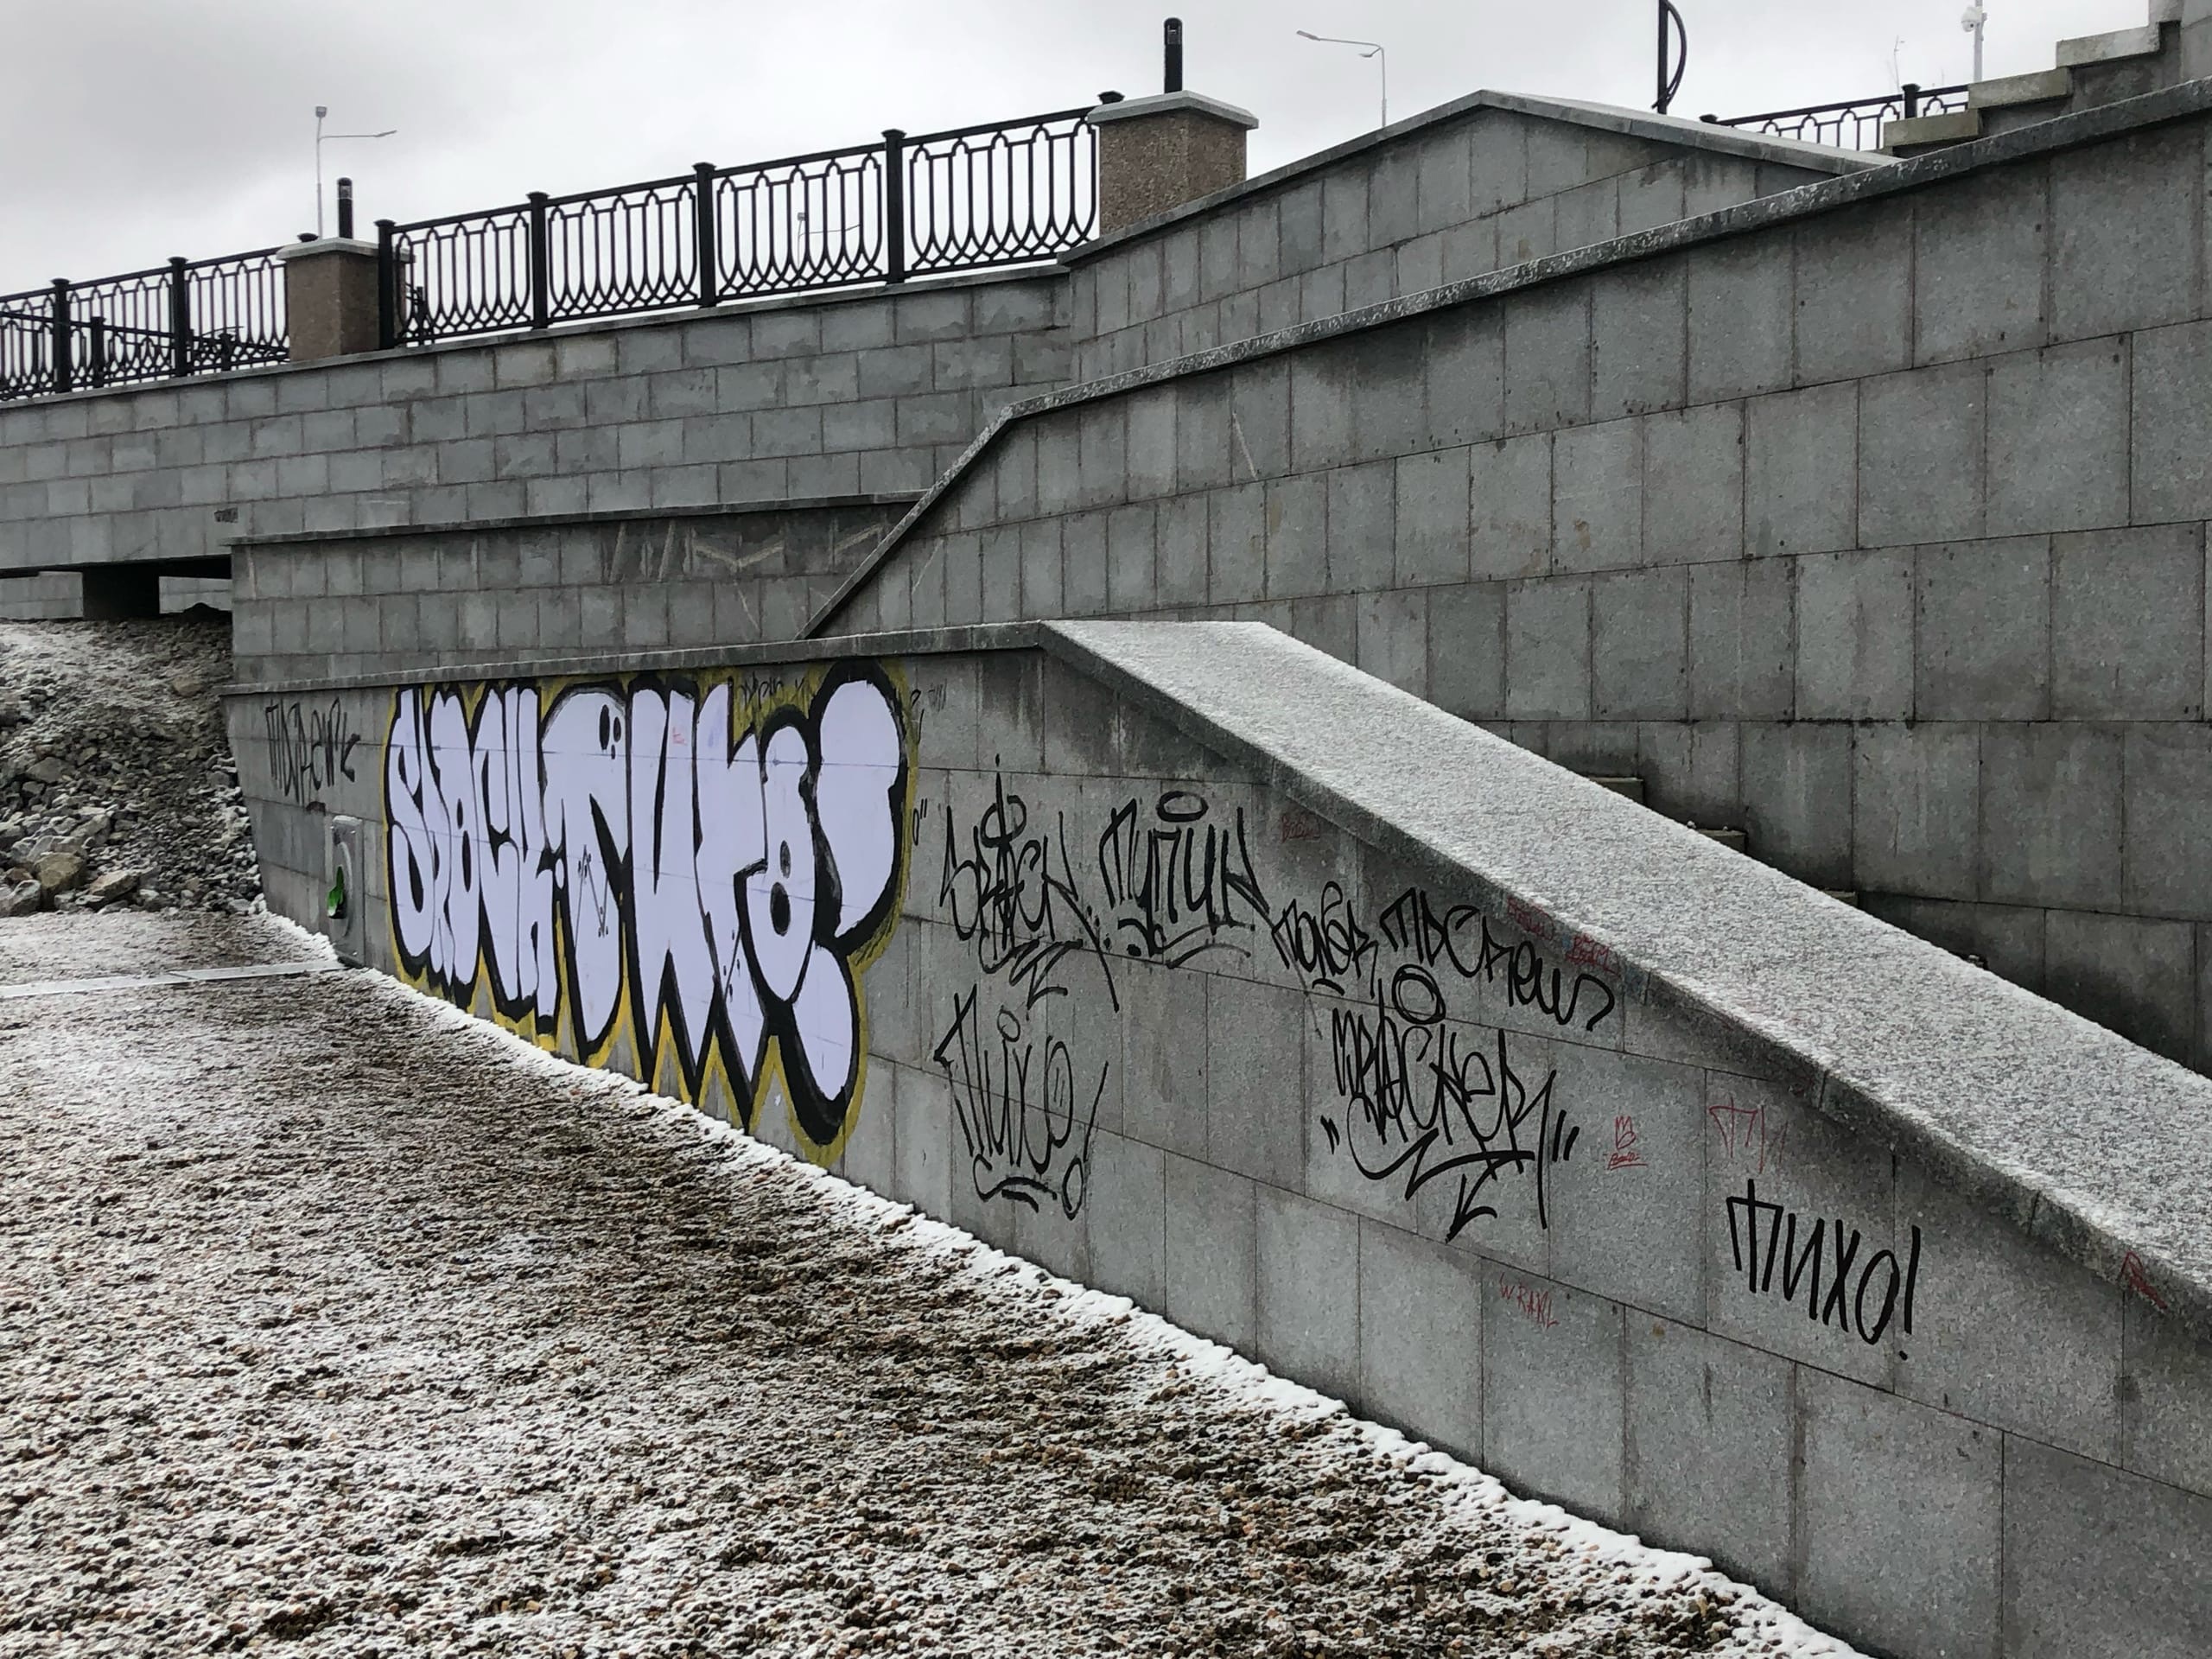 Утечка 500 миллионов. Вандалы Нижний Тагил. Вандалы изрисовали мост Нижний Тагил. Граффити, которые были испорчены вандалами. Граффити вандалы Набережные Челны.